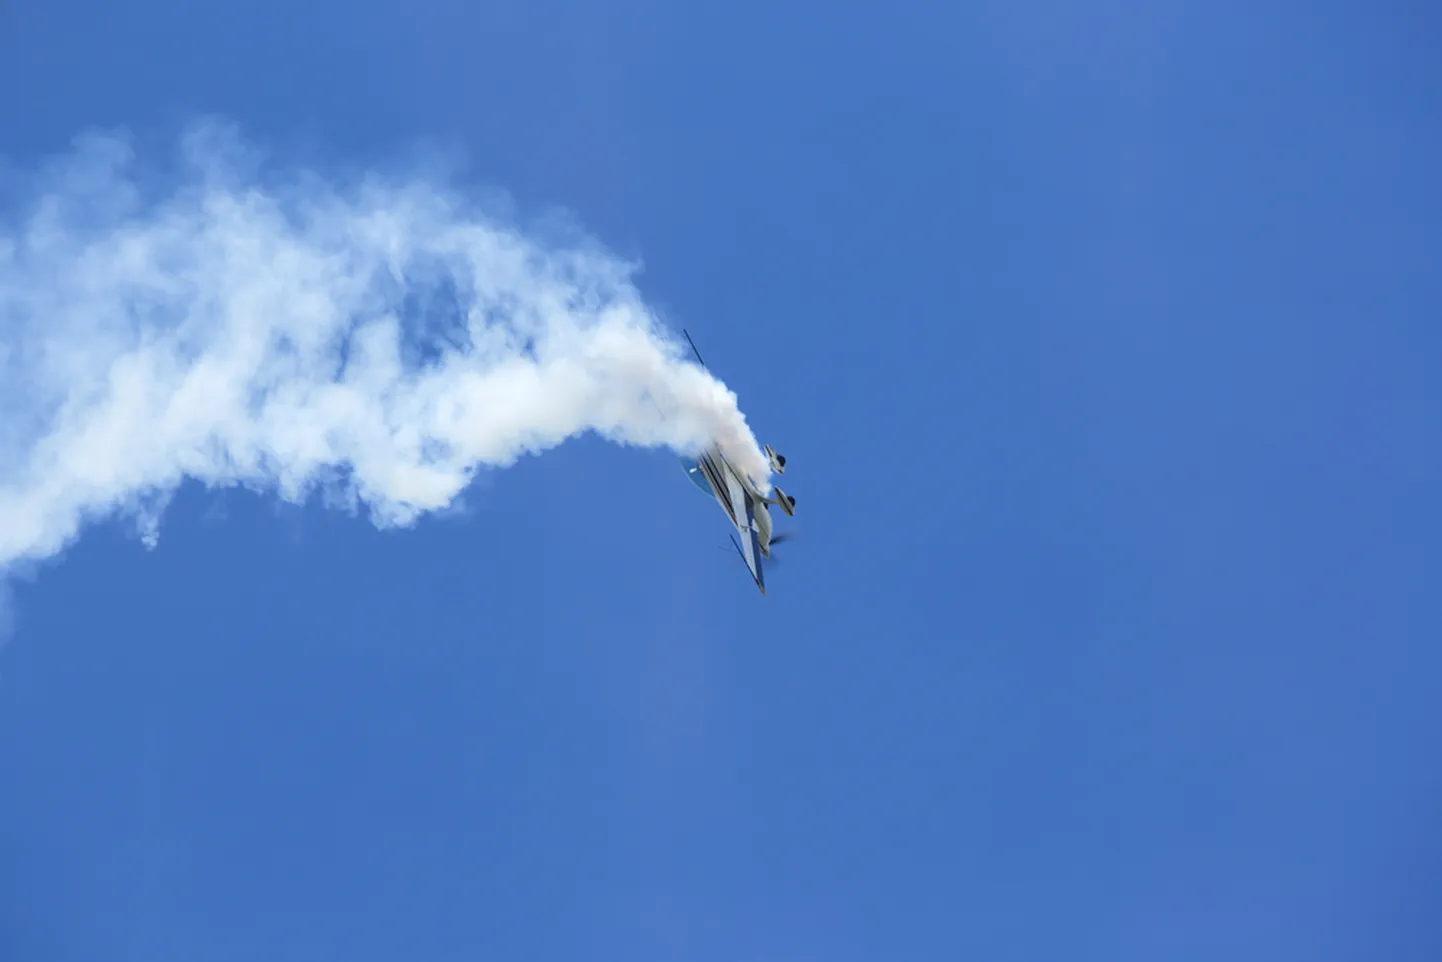 Lidmašīnas dzinēja sprādziens. Ilustratīvs attēls